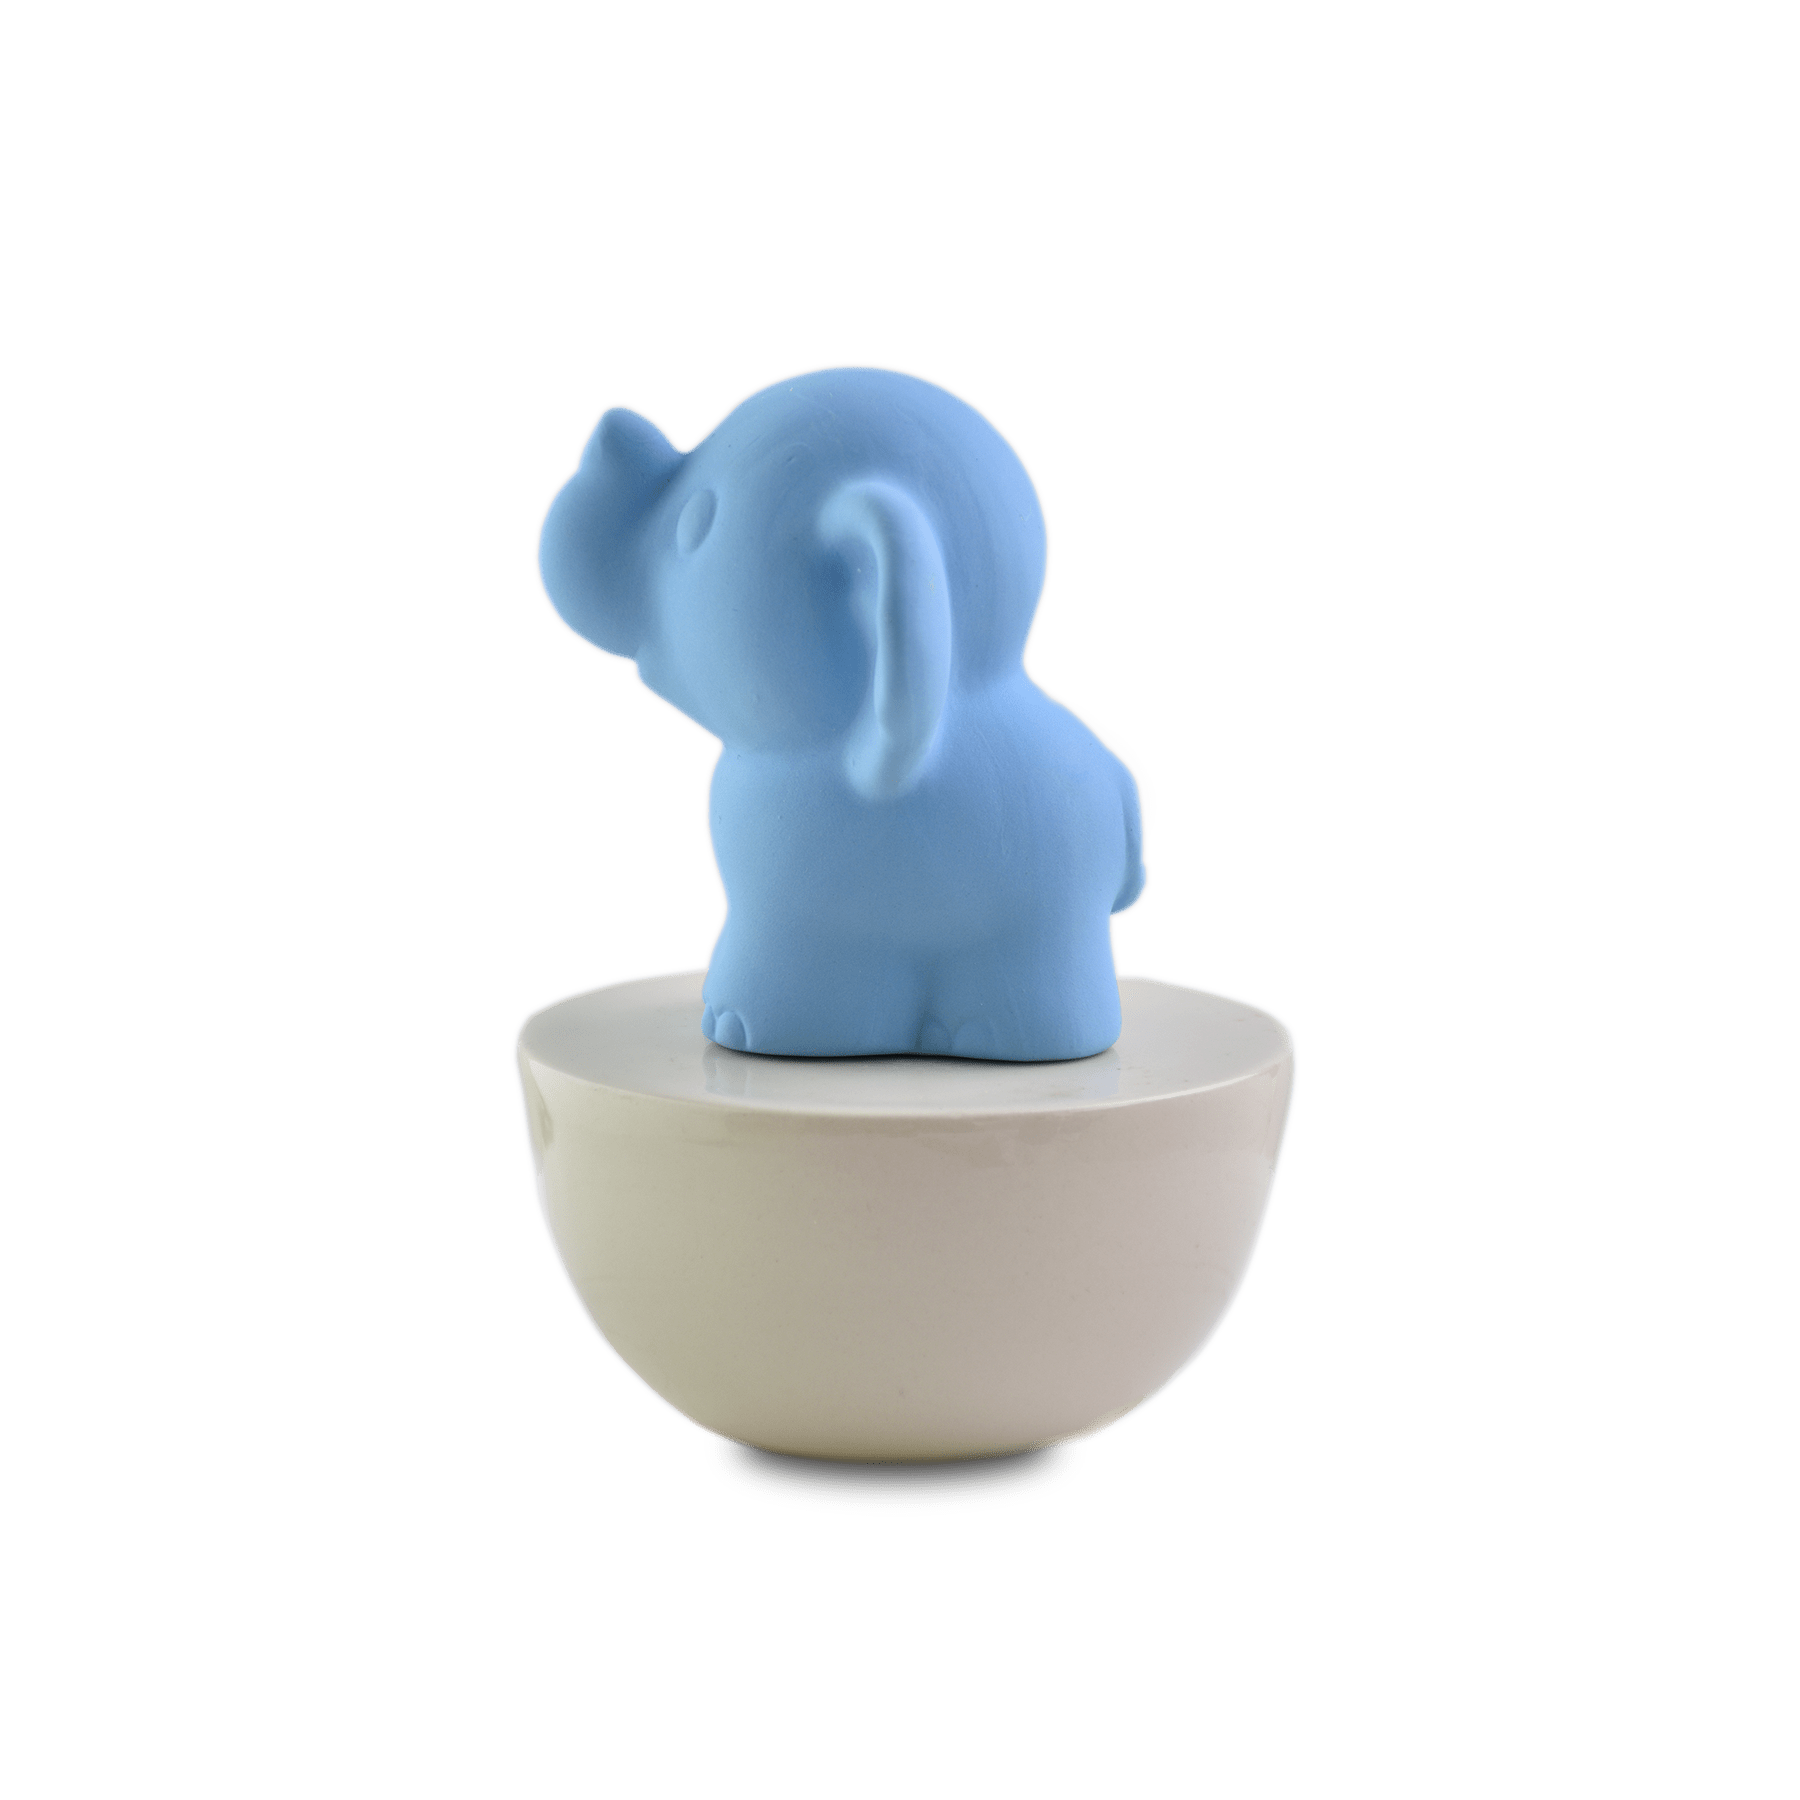 Cutie Scenting Clay Diffuser Elephant, Rose Geranium 60ml - Hysses Singapore